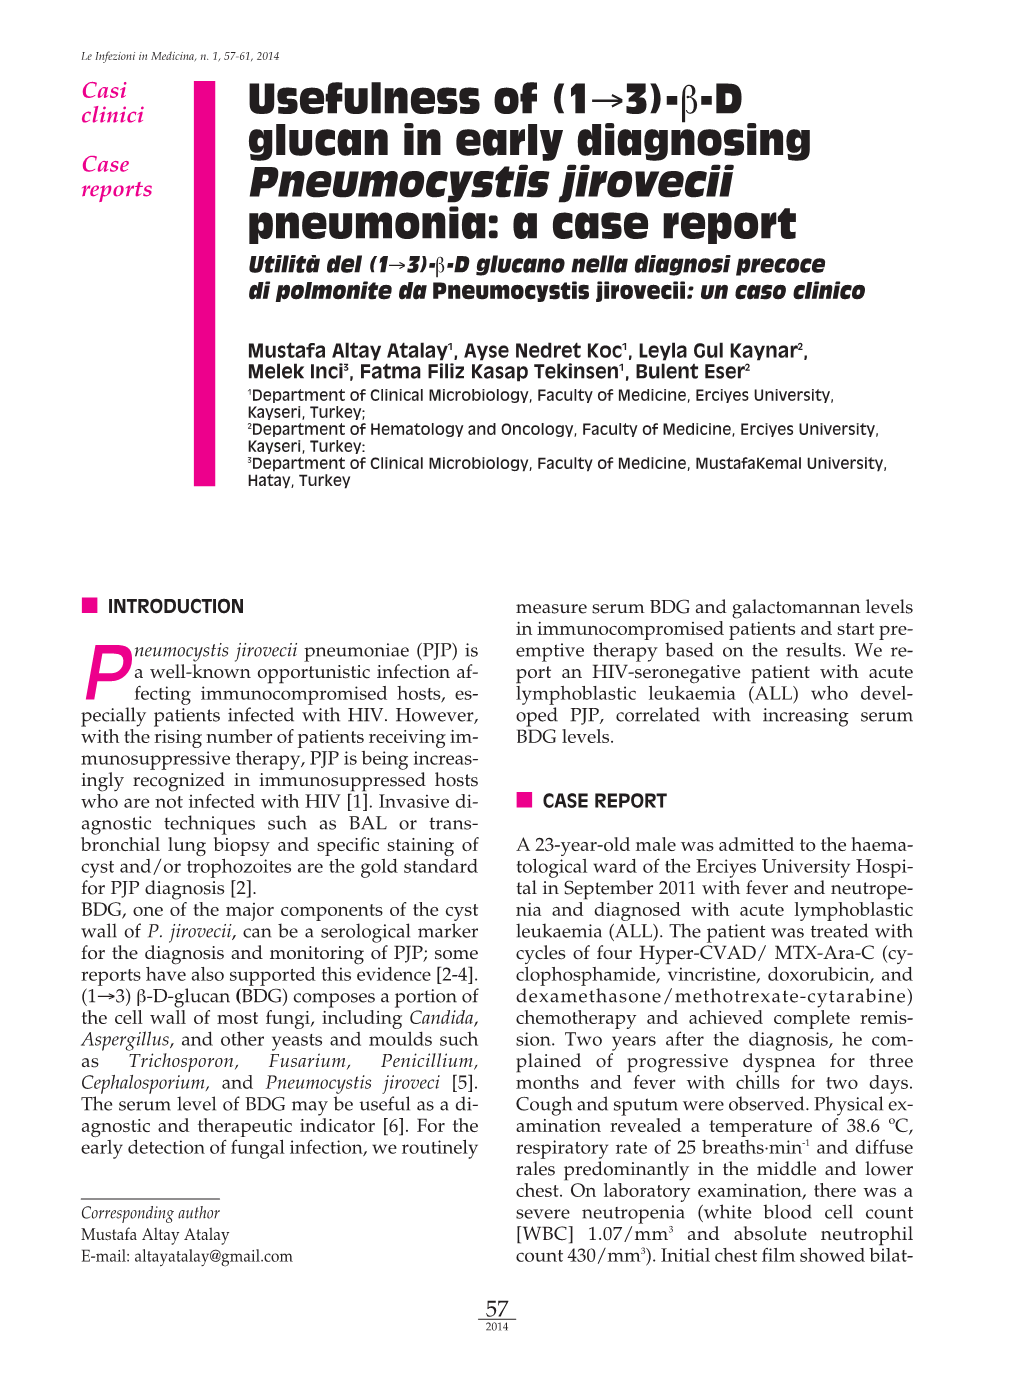 Β-D Glucan in Early Diagnosing Pneumocystis Jirovecii Pneumonia